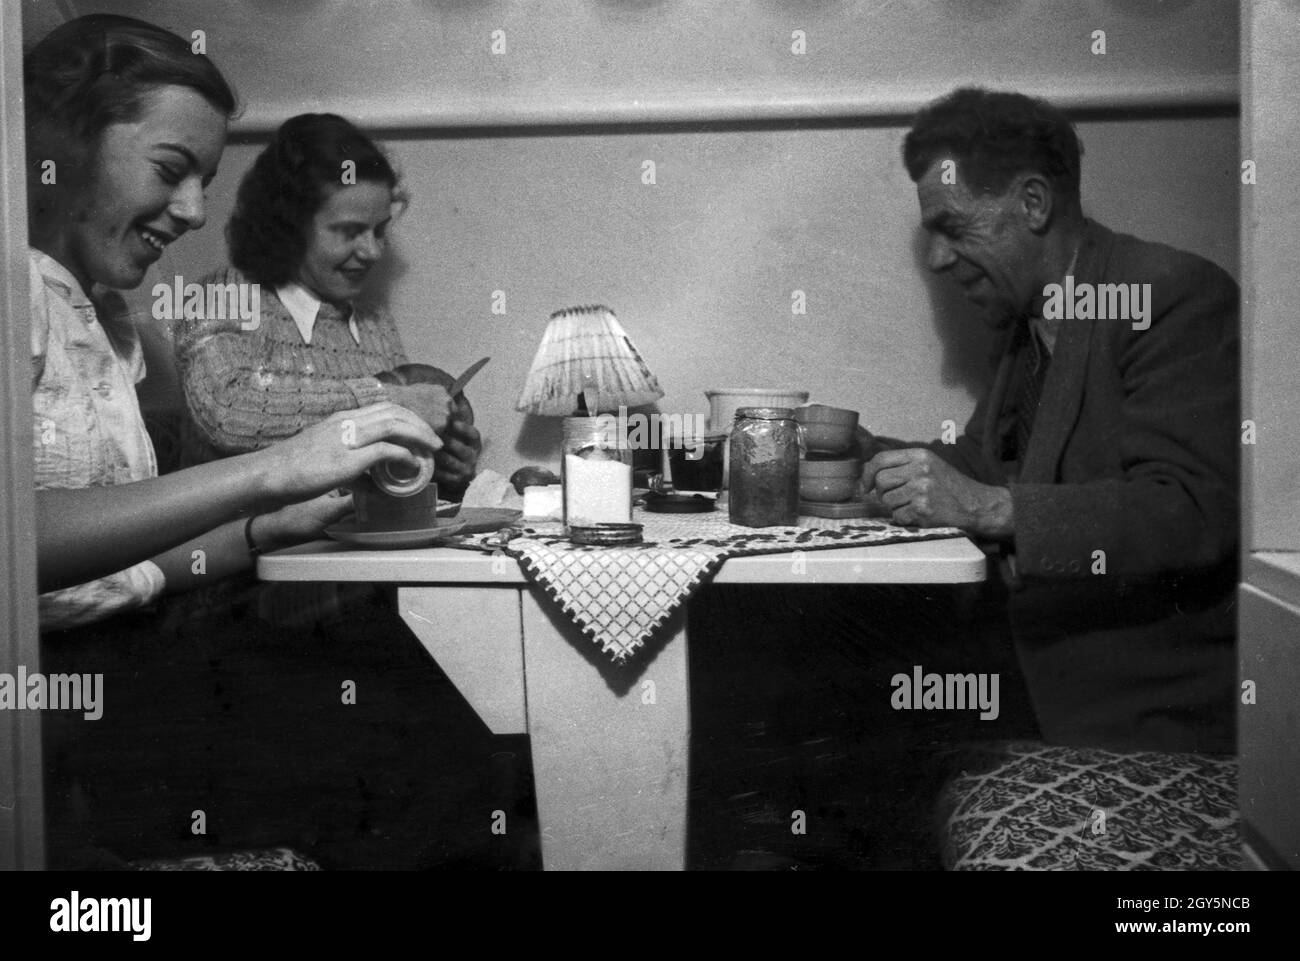 Eine Familie bei Kaffee und Kuchen, Deutschland 1940er Jahre. A family having some coffee, Germany 1940s. Stock Photo